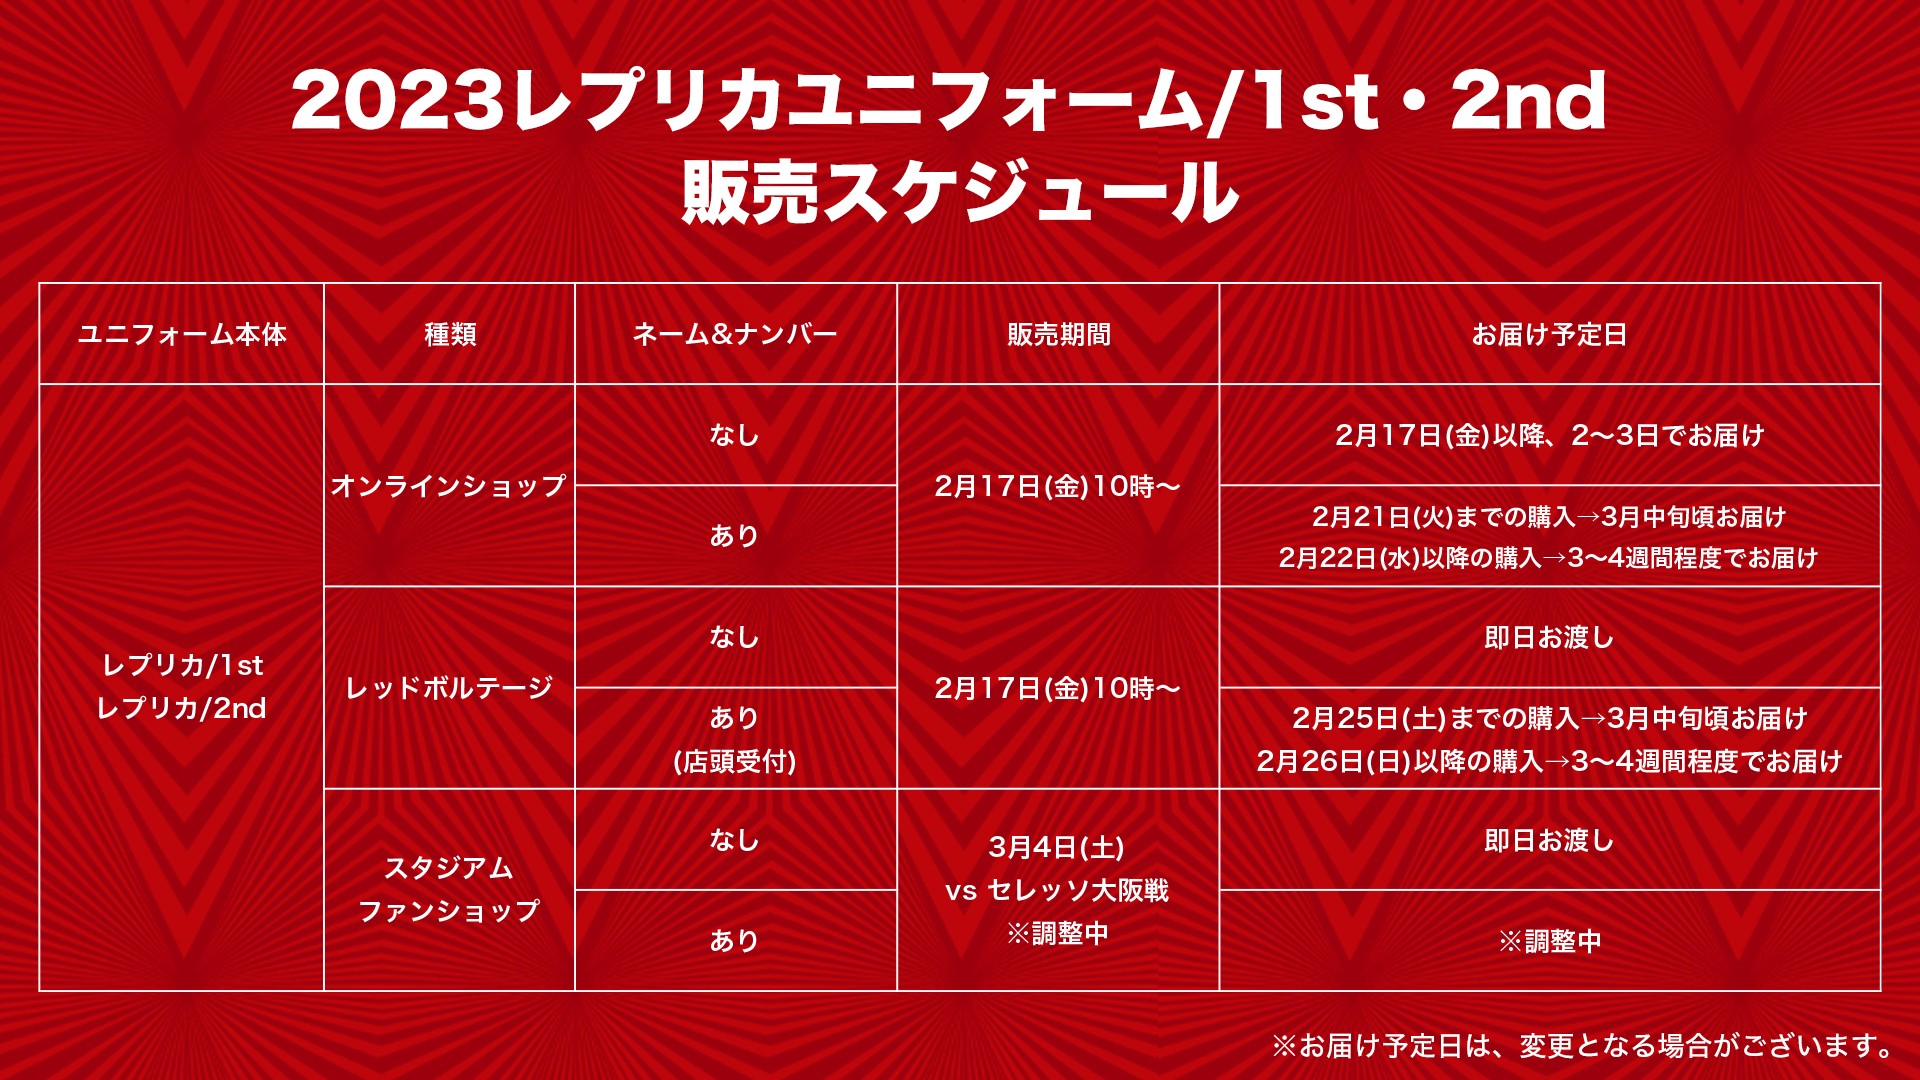 2023シーズンユニフォーム 1st/2nd一般販売日決定!!(2/14更新)